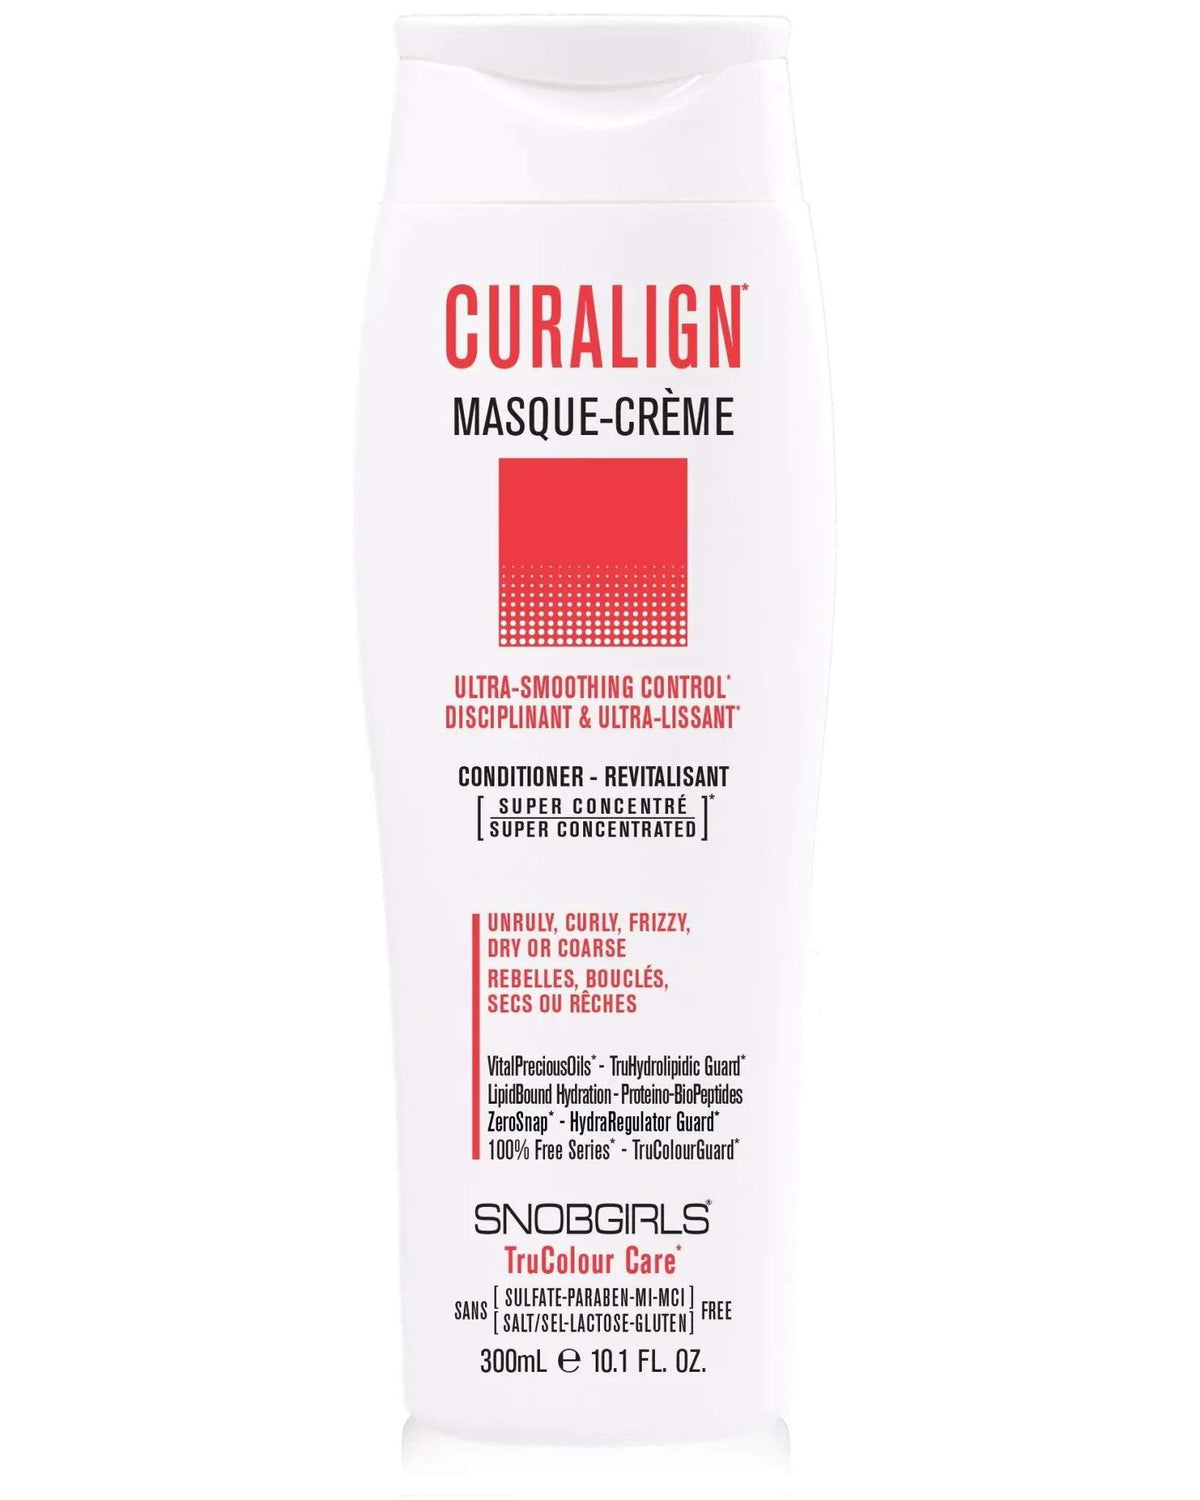 CURALIGN Masque-Creme (conditioner) 10.1 FL. OZ. - SNOBGIRLS.com